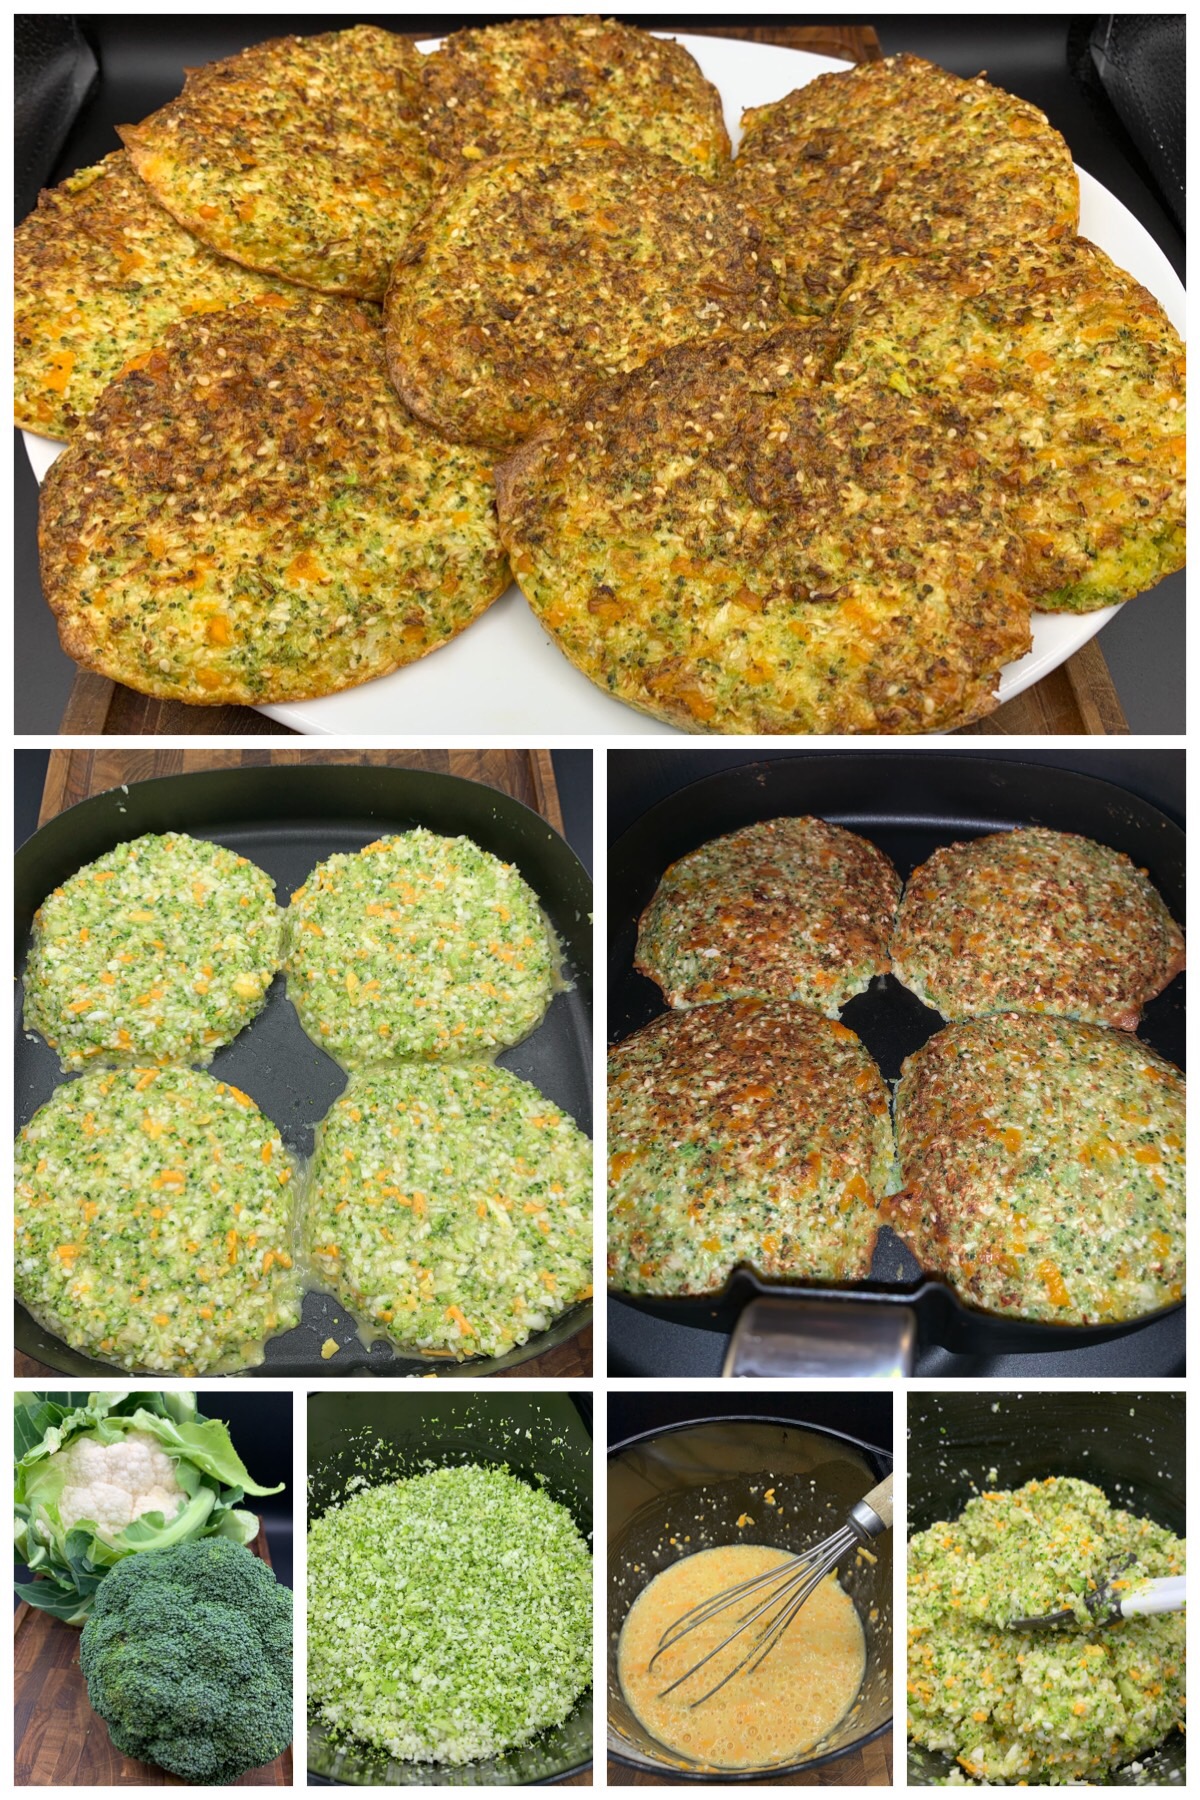 Grøntsagsbrød af broccoli og blomkål